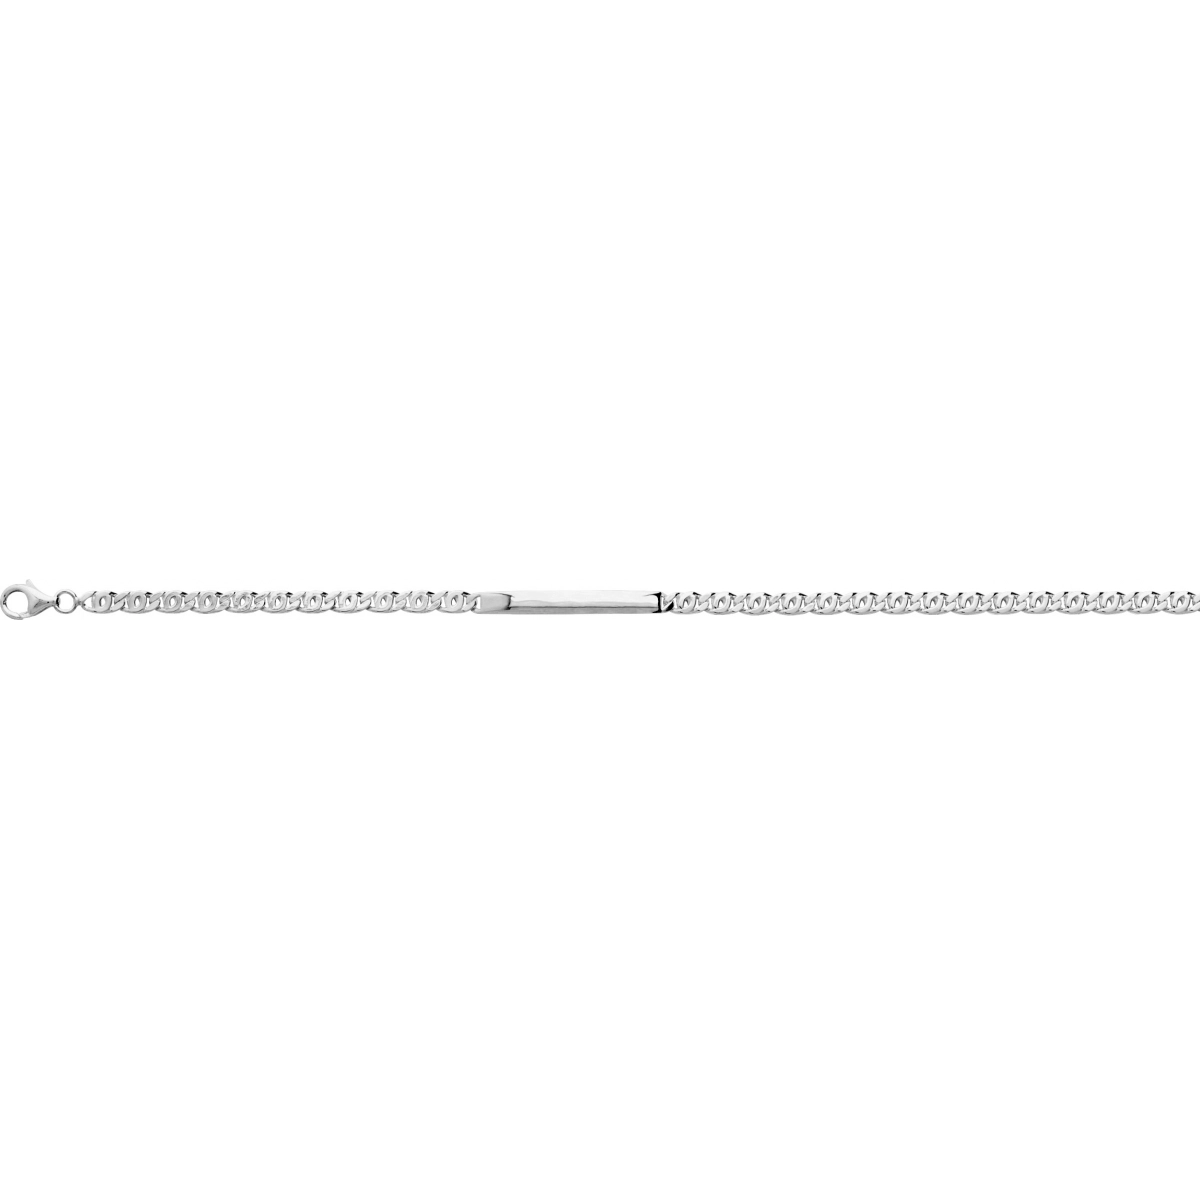 Bracelet rh925 Silver - Size: 18  Lua Blanca  304048.00.18